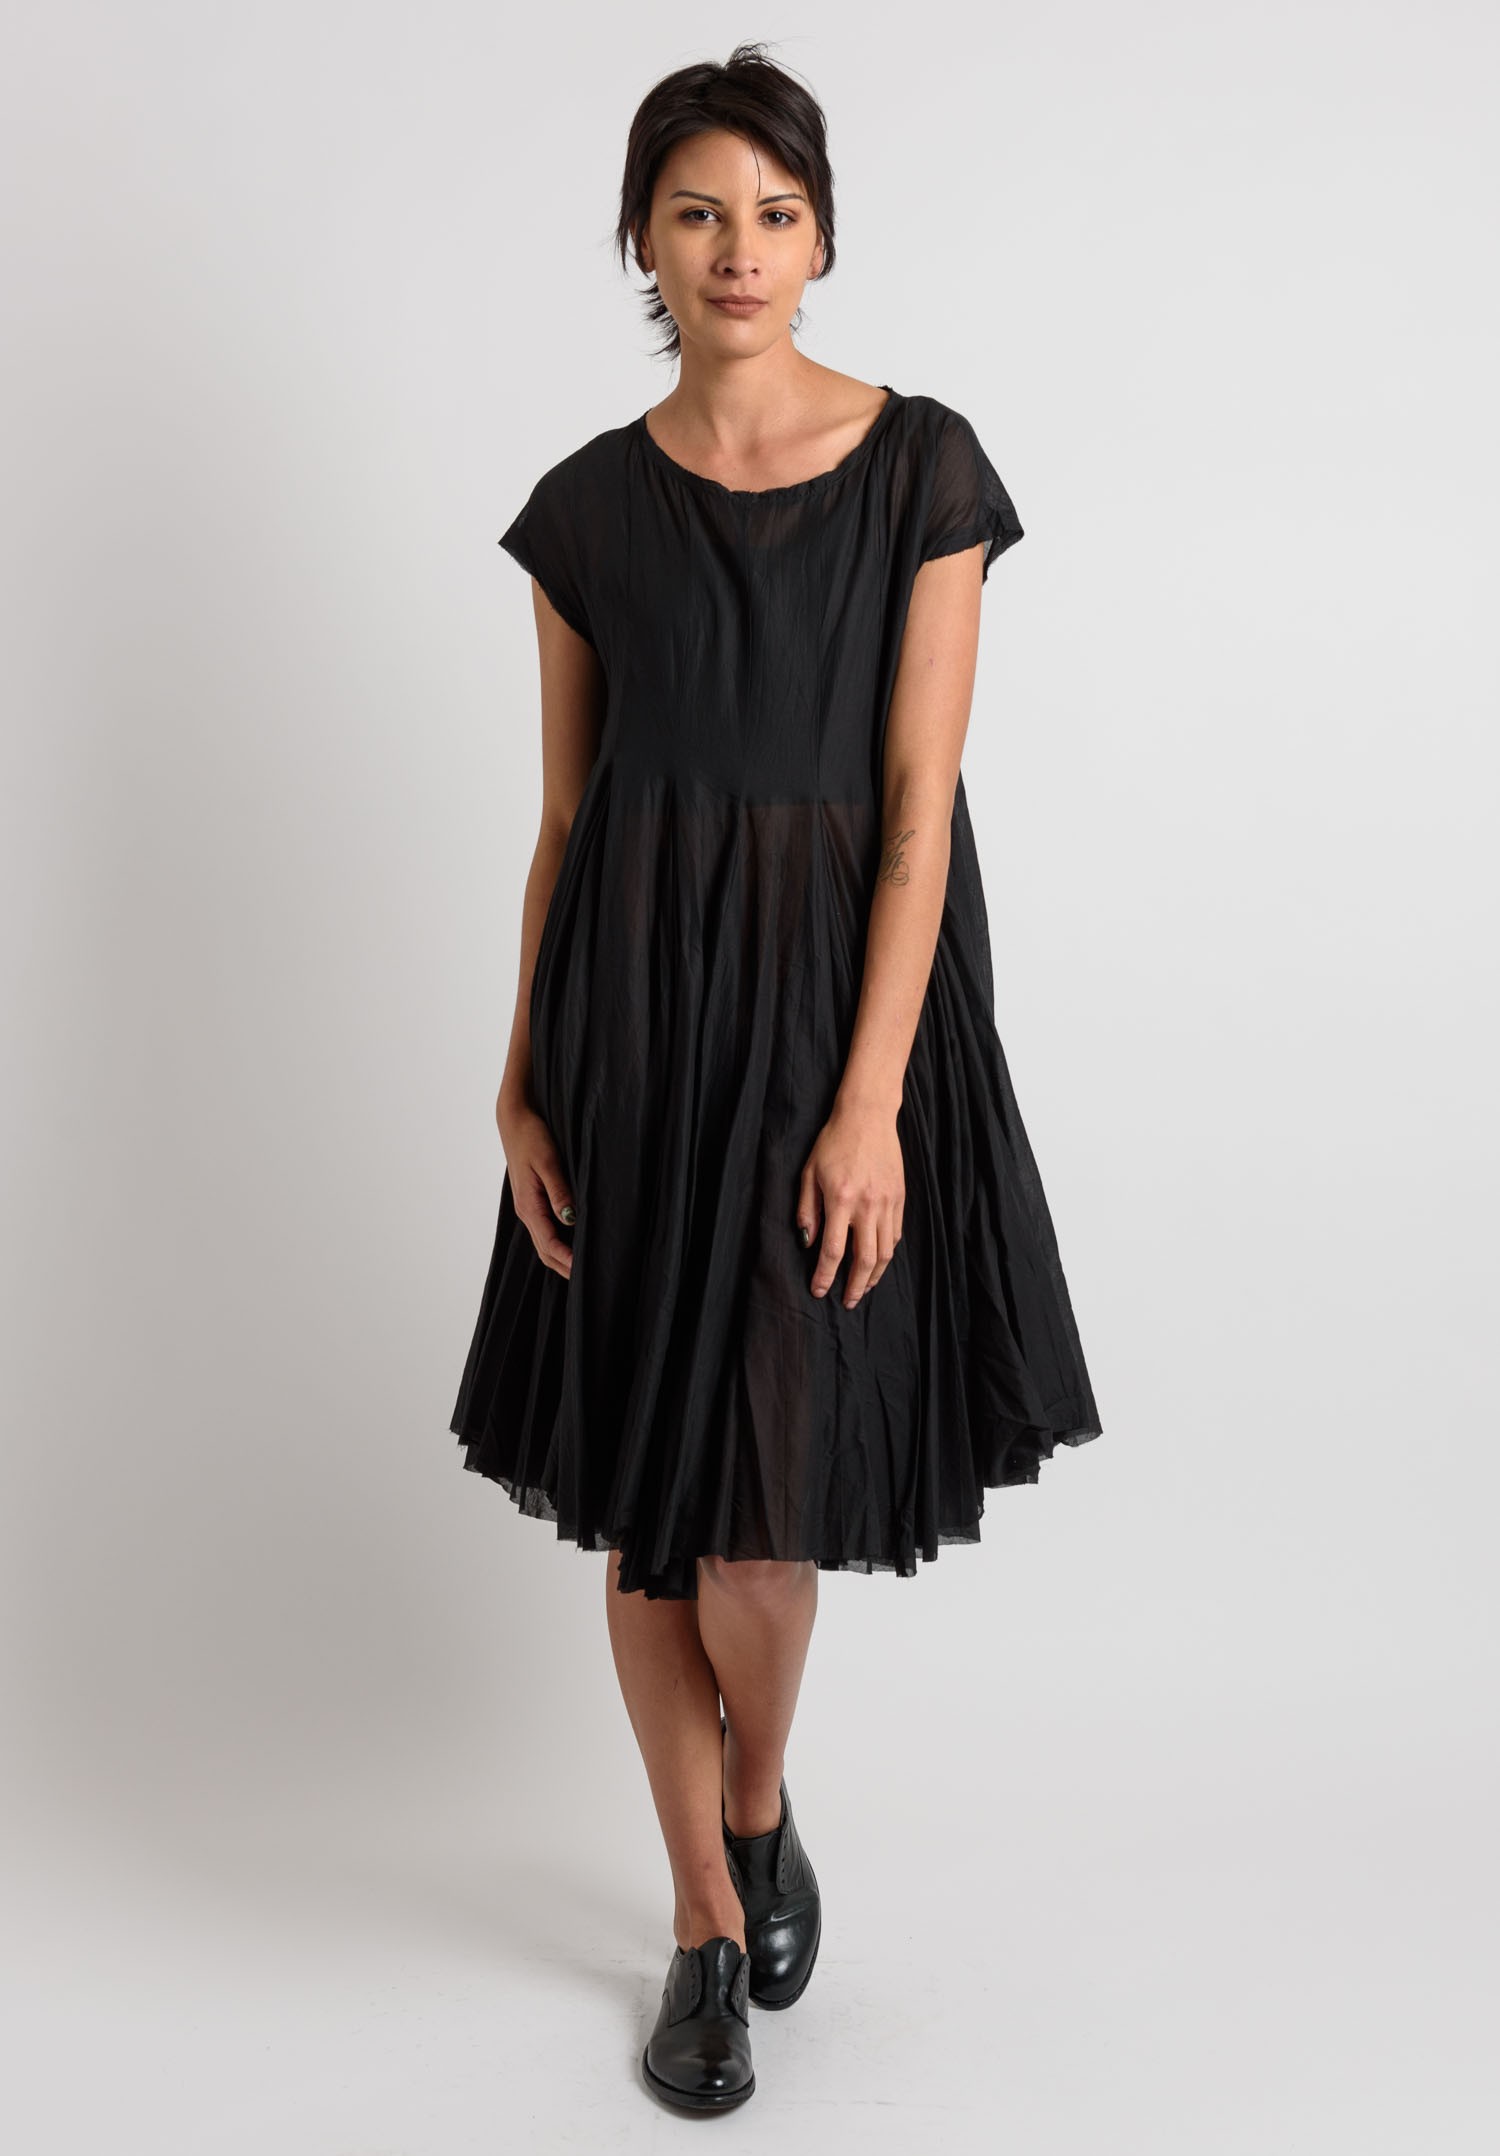 Rundholz Cotton Sheer Oversized Dress in Black | Santa Fe Dry Goods ...